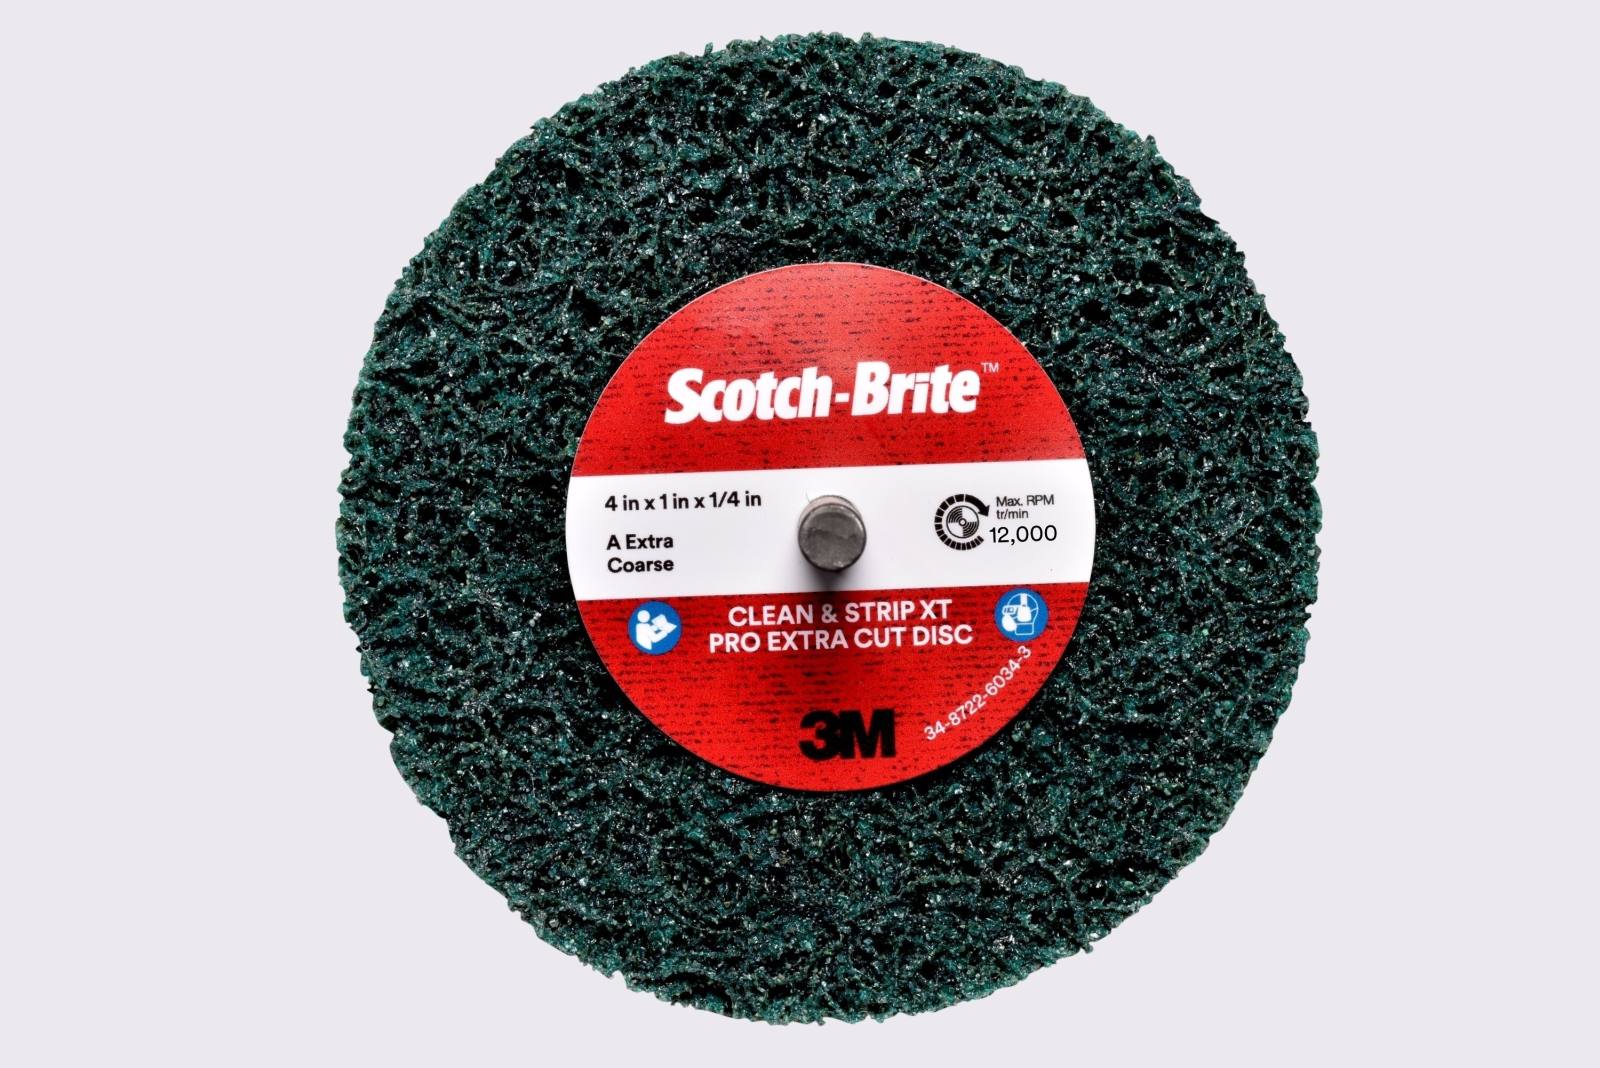 3M Scotch-Brite disco per pulizia grossolana XT-ZS Pro Extra Cut, 150 mm, 13 mm, 8 mm, A, extra grossolano